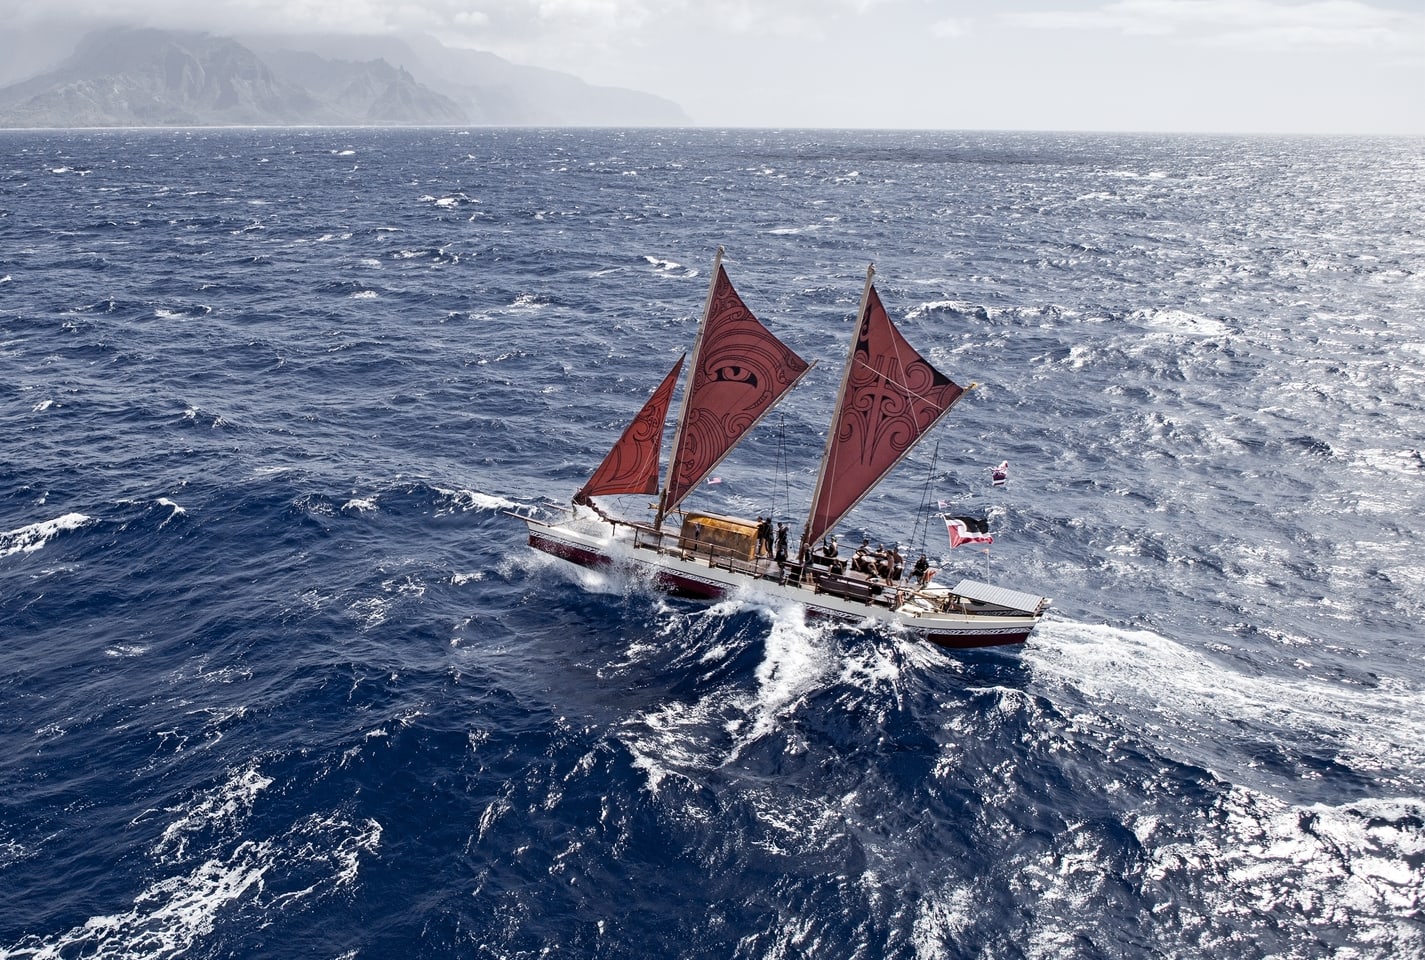 Vaka Moana on Hawaii, Auckland and Tahiti voyage, 2011.